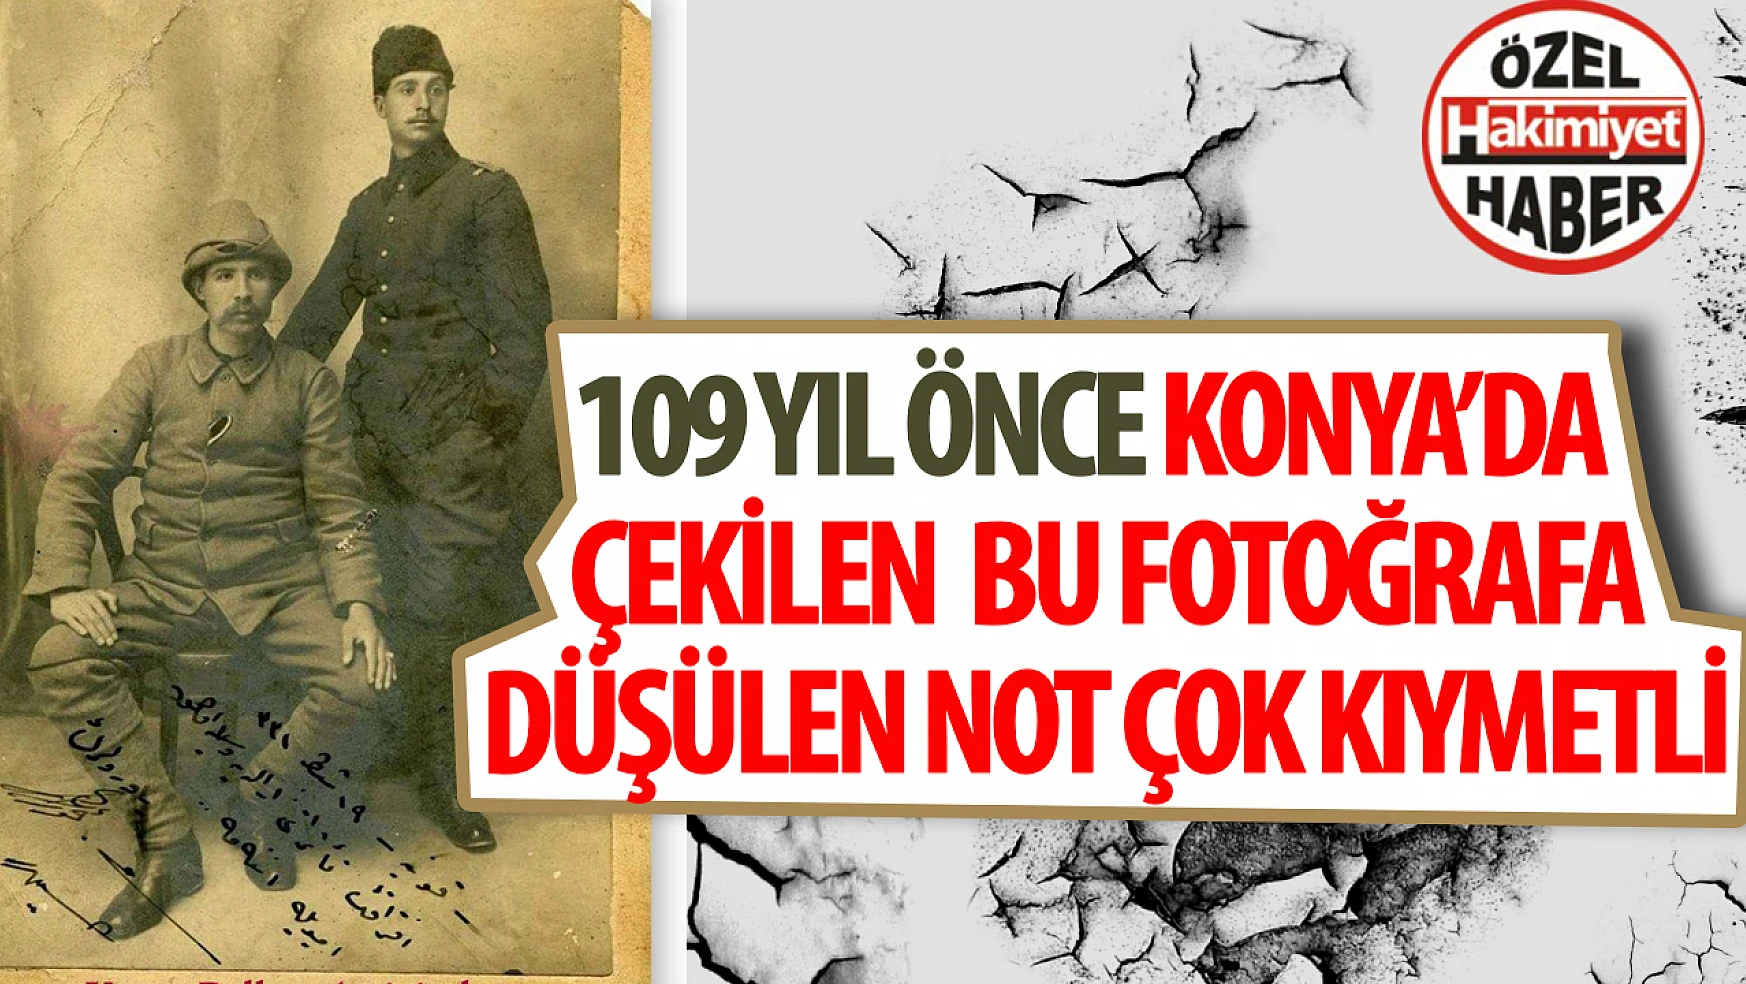 Konya'da 1915 Yılından Yansıyan Milli Mücadele Ruhu: İki Asker Kardeşin Annesine Gönderdikleri Fotoğrafın Dokunaklı Hikayesi